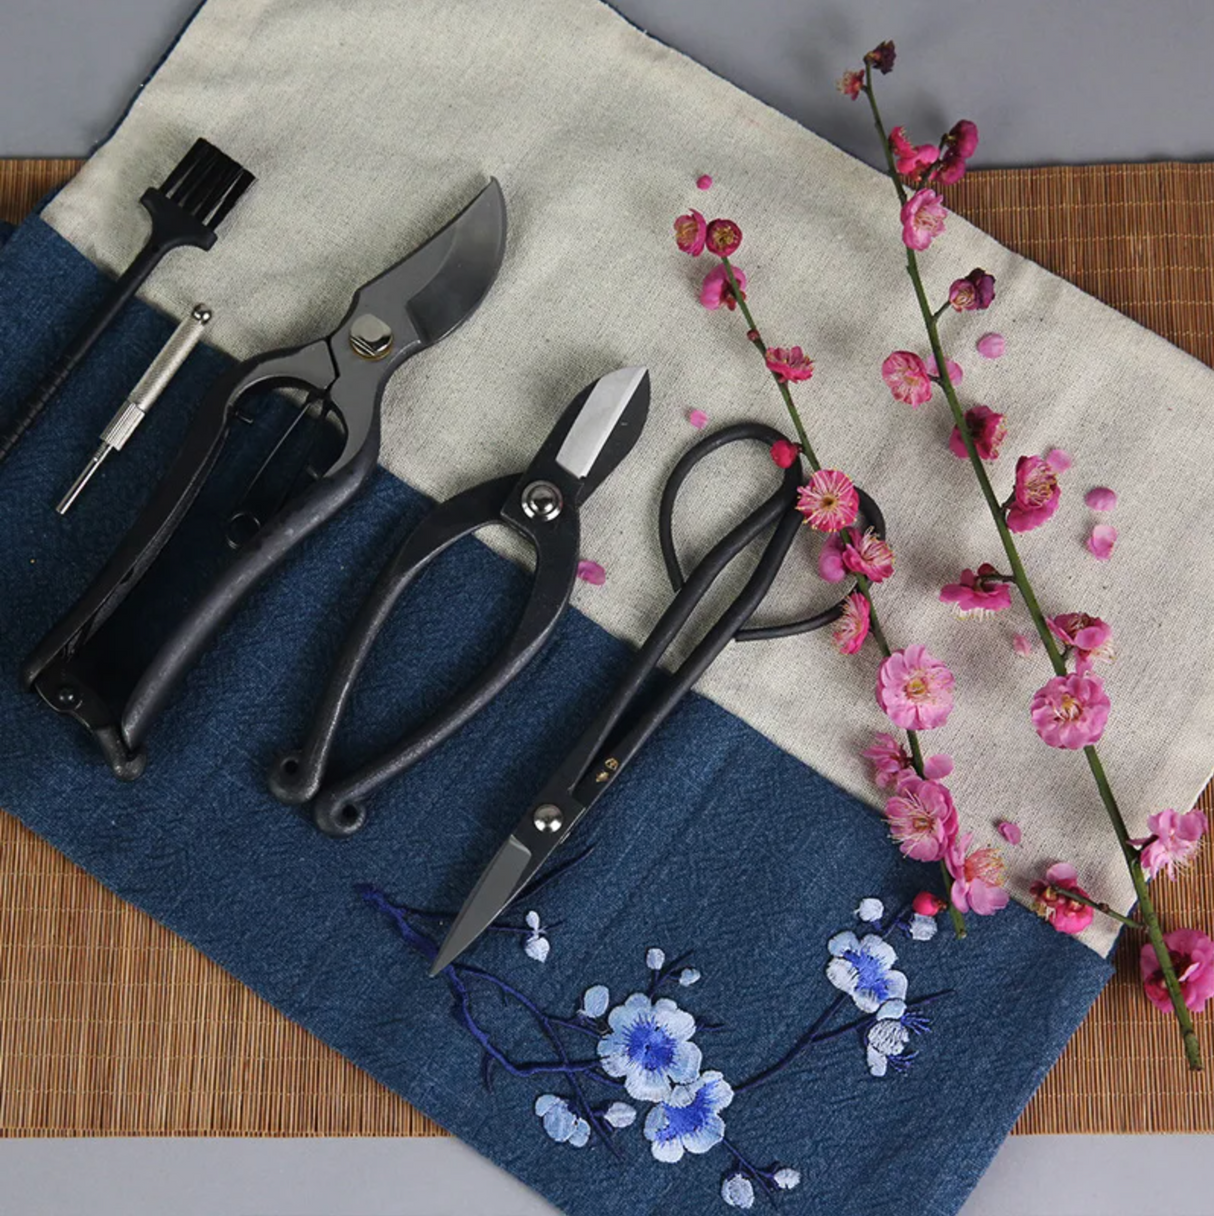 Kit de ciseaux professionnels pour ikebana